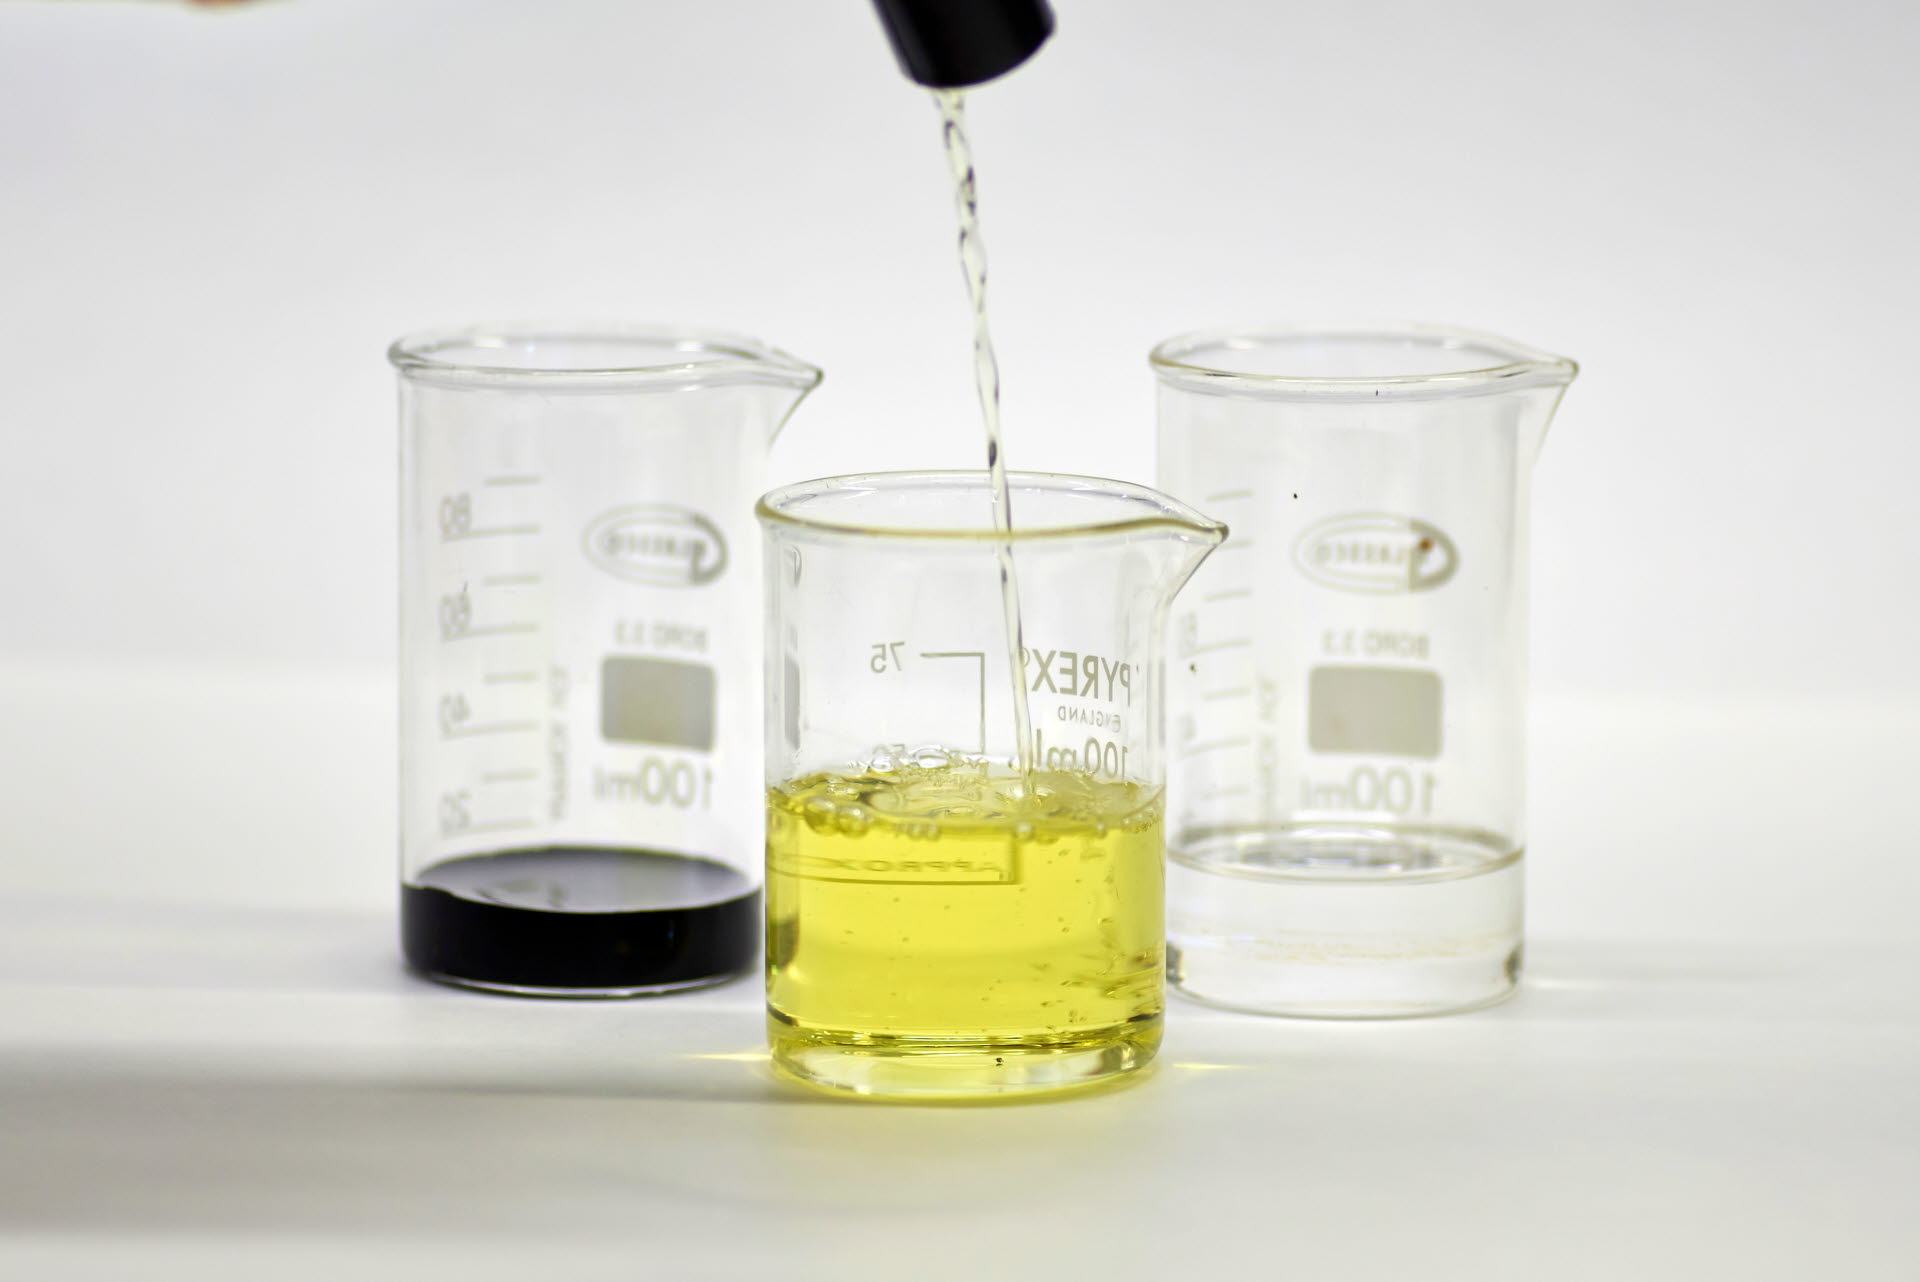 Renewable liquid biofuels